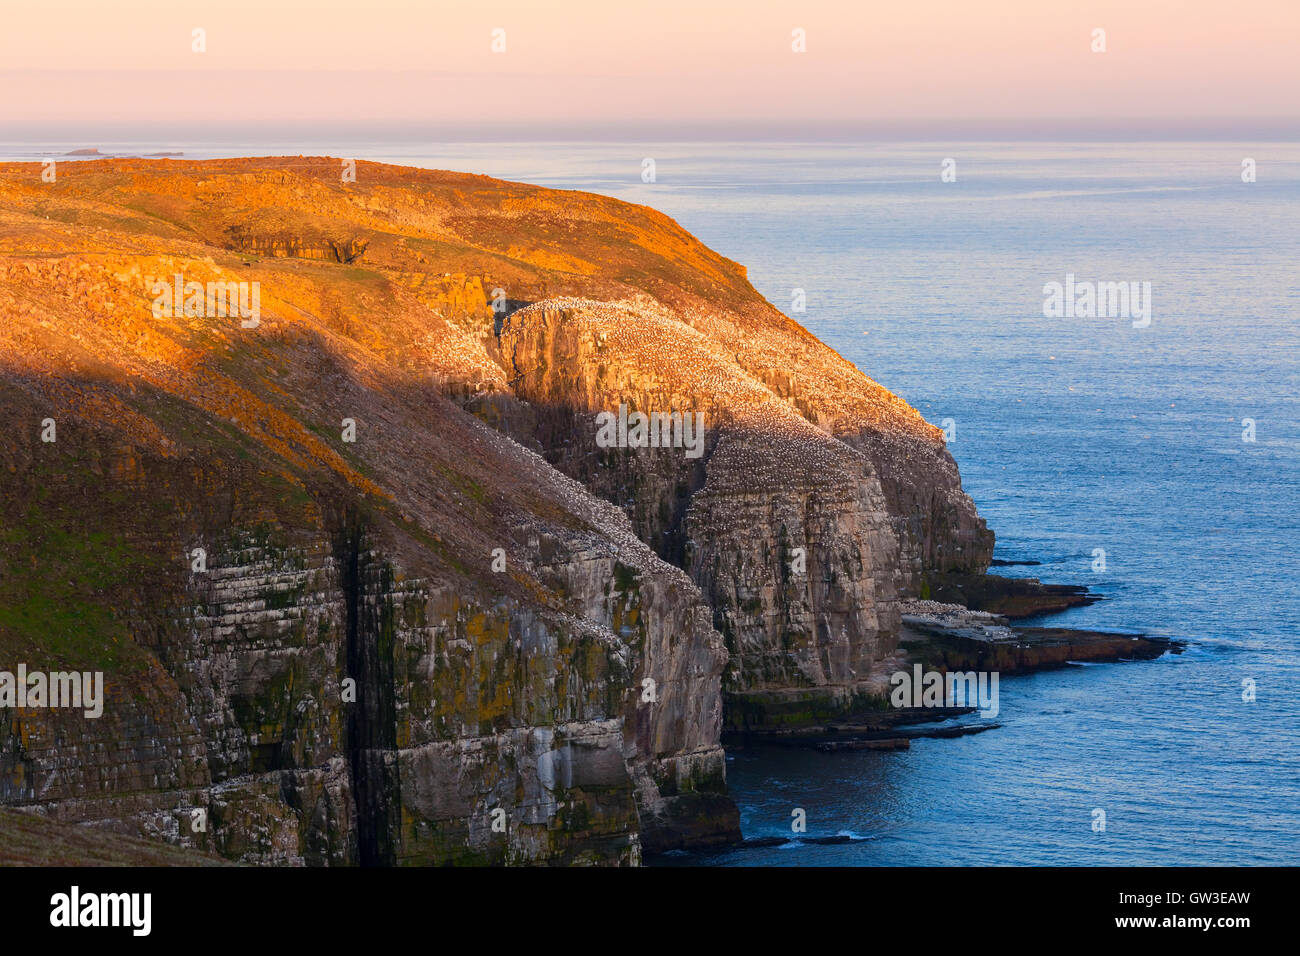 Scogliere si ergono sopra l'oceano Atlantico con la parte settentrionale di sule (Morus bassanus) arroccato lungo il bordo roccioso. Terranova, Canada. Foto Stock